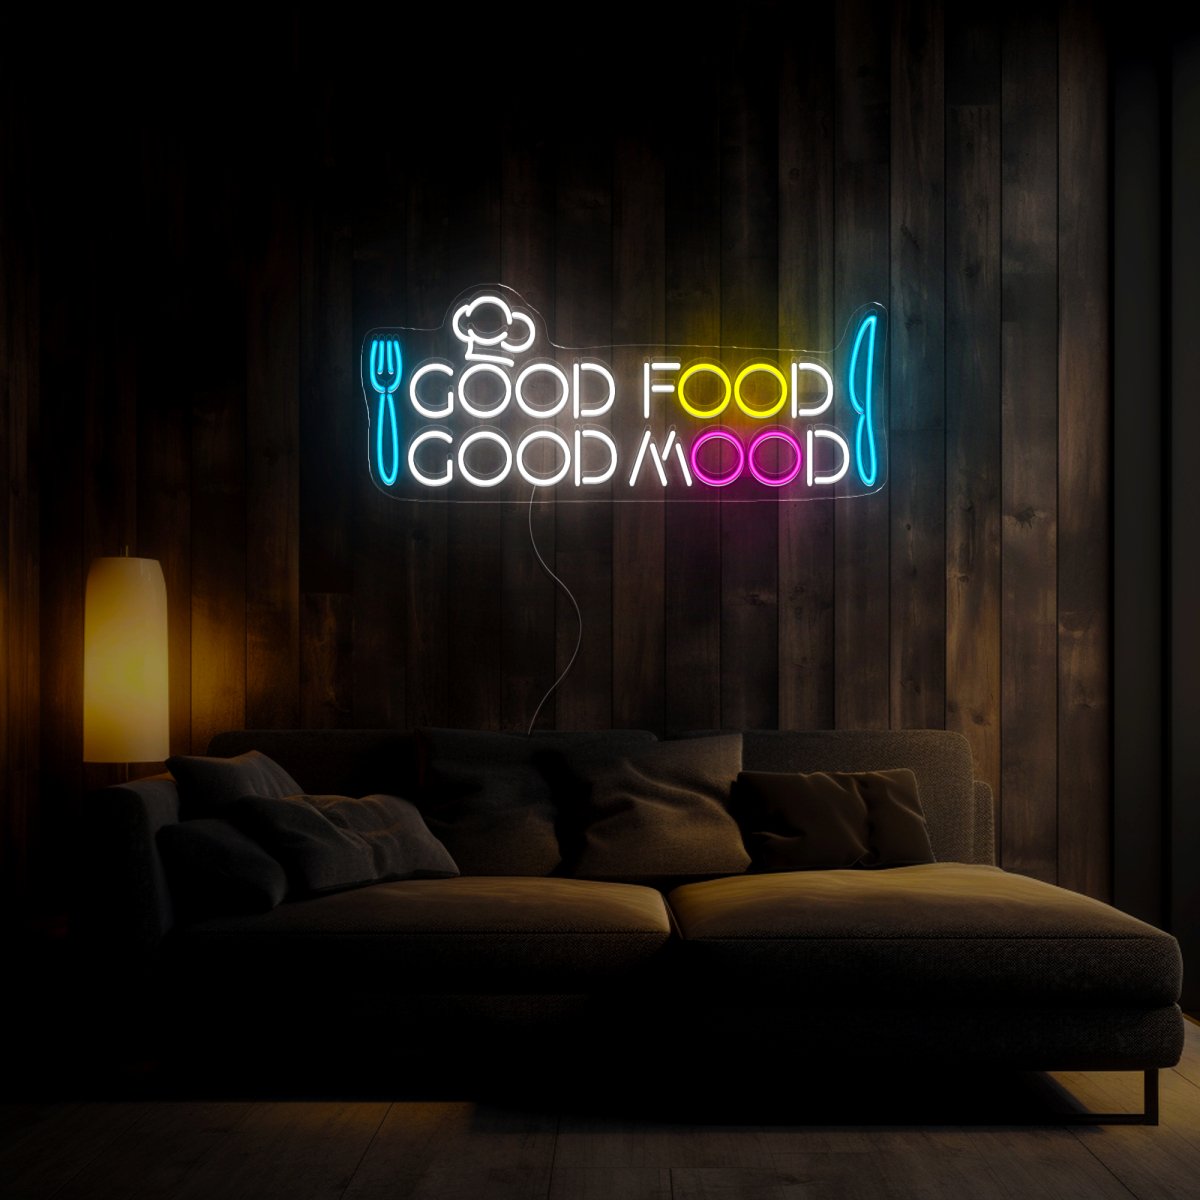 Good Food, Good Mood Neon Sign - Reels Custom